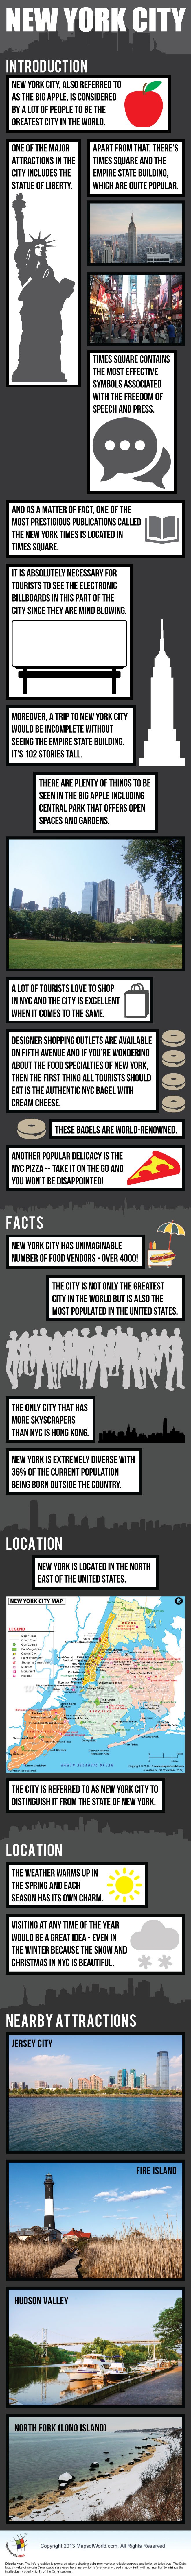 New York City Infographic